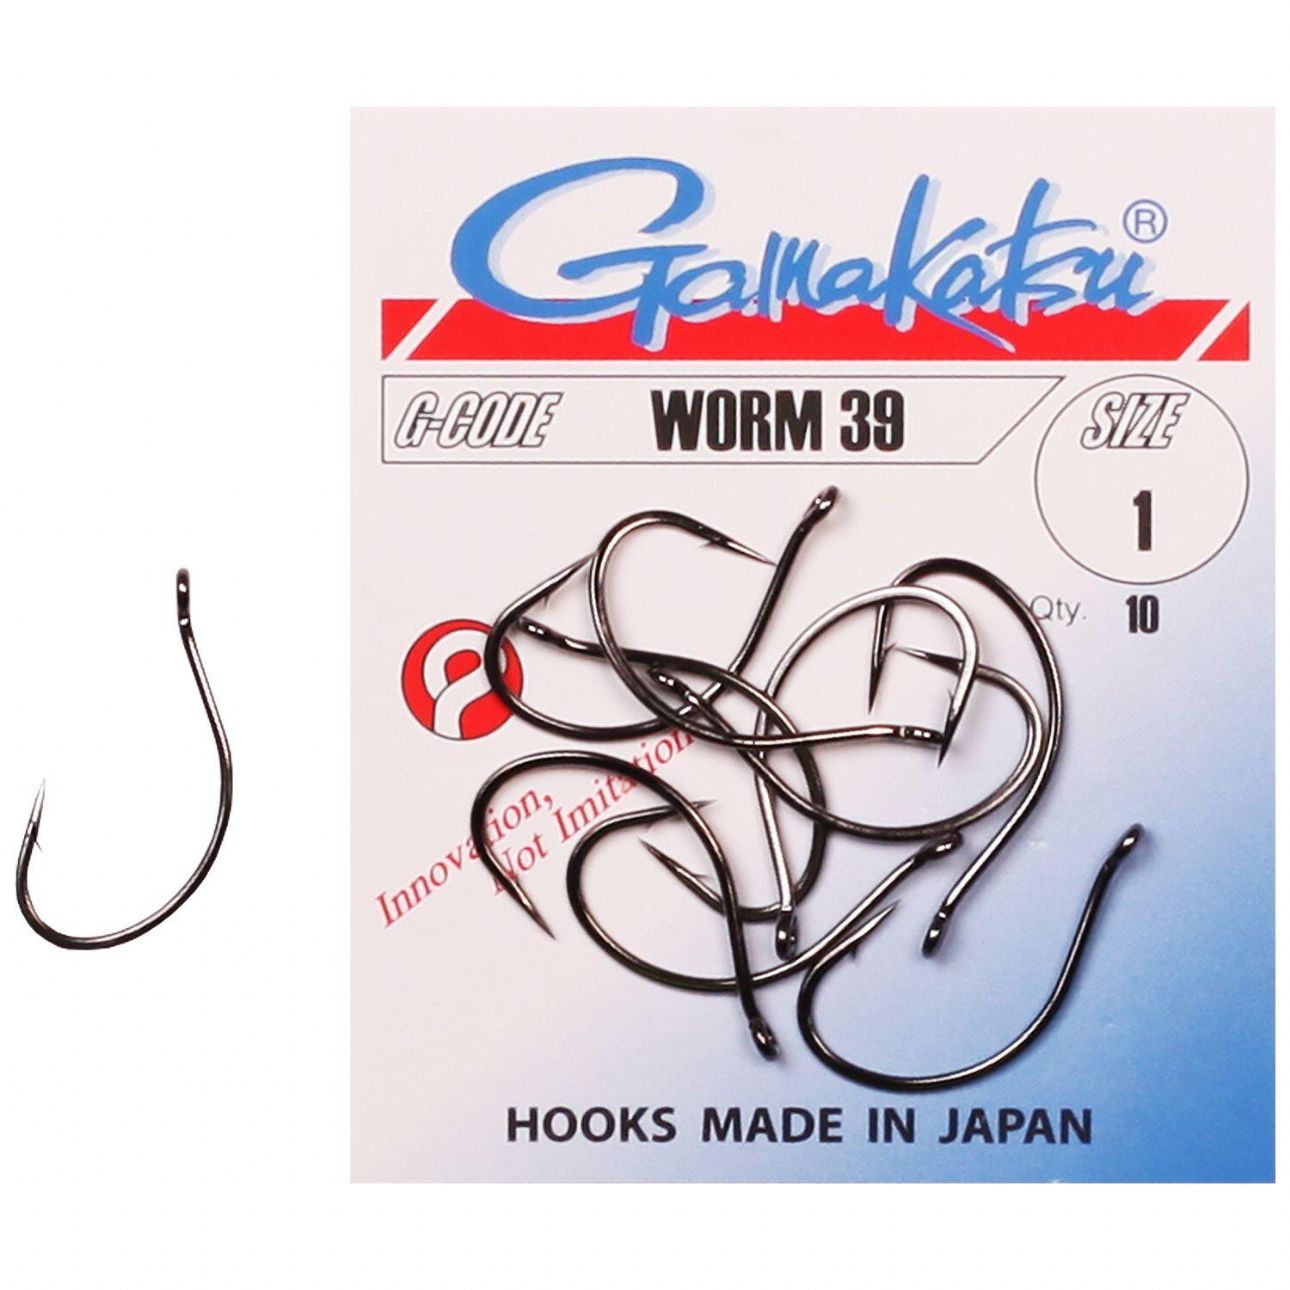 Gamakatsu Worm 39 Hooks